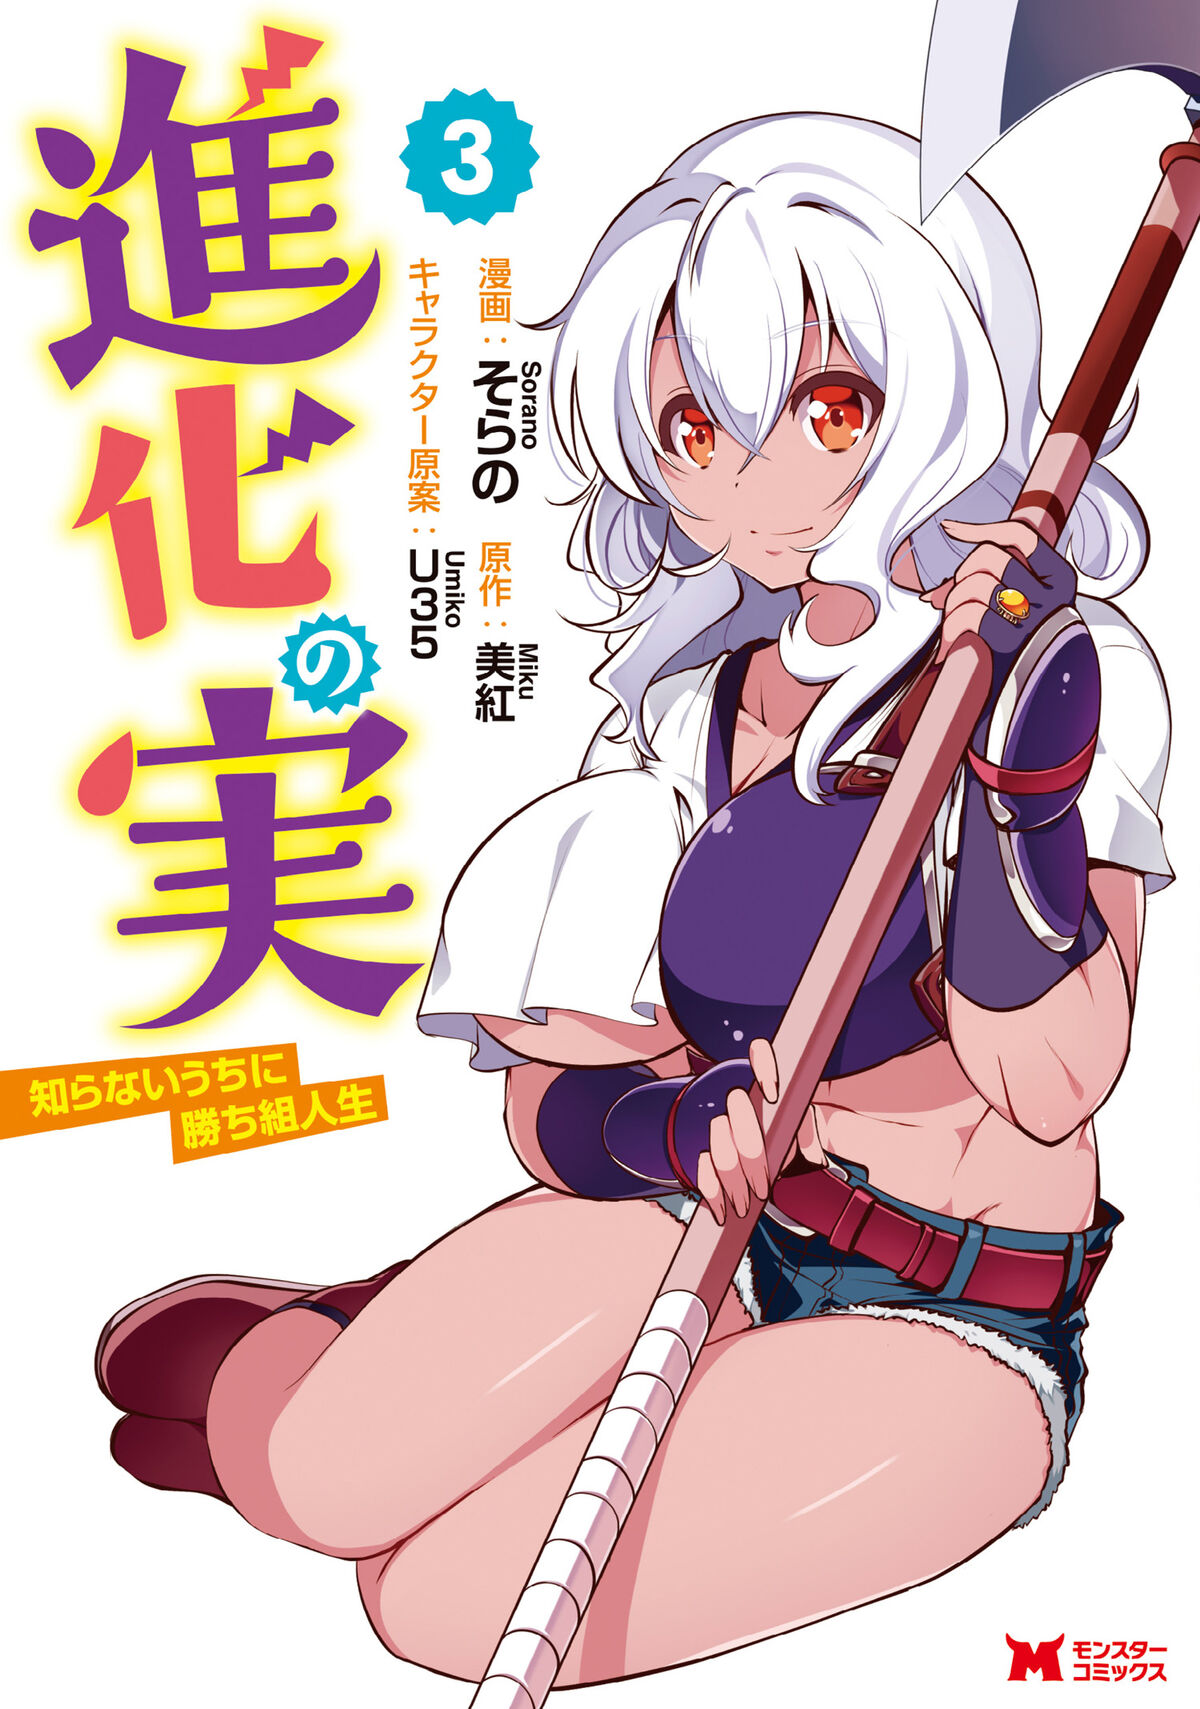 Manga Volume 4, Shinka no Mi Wiki